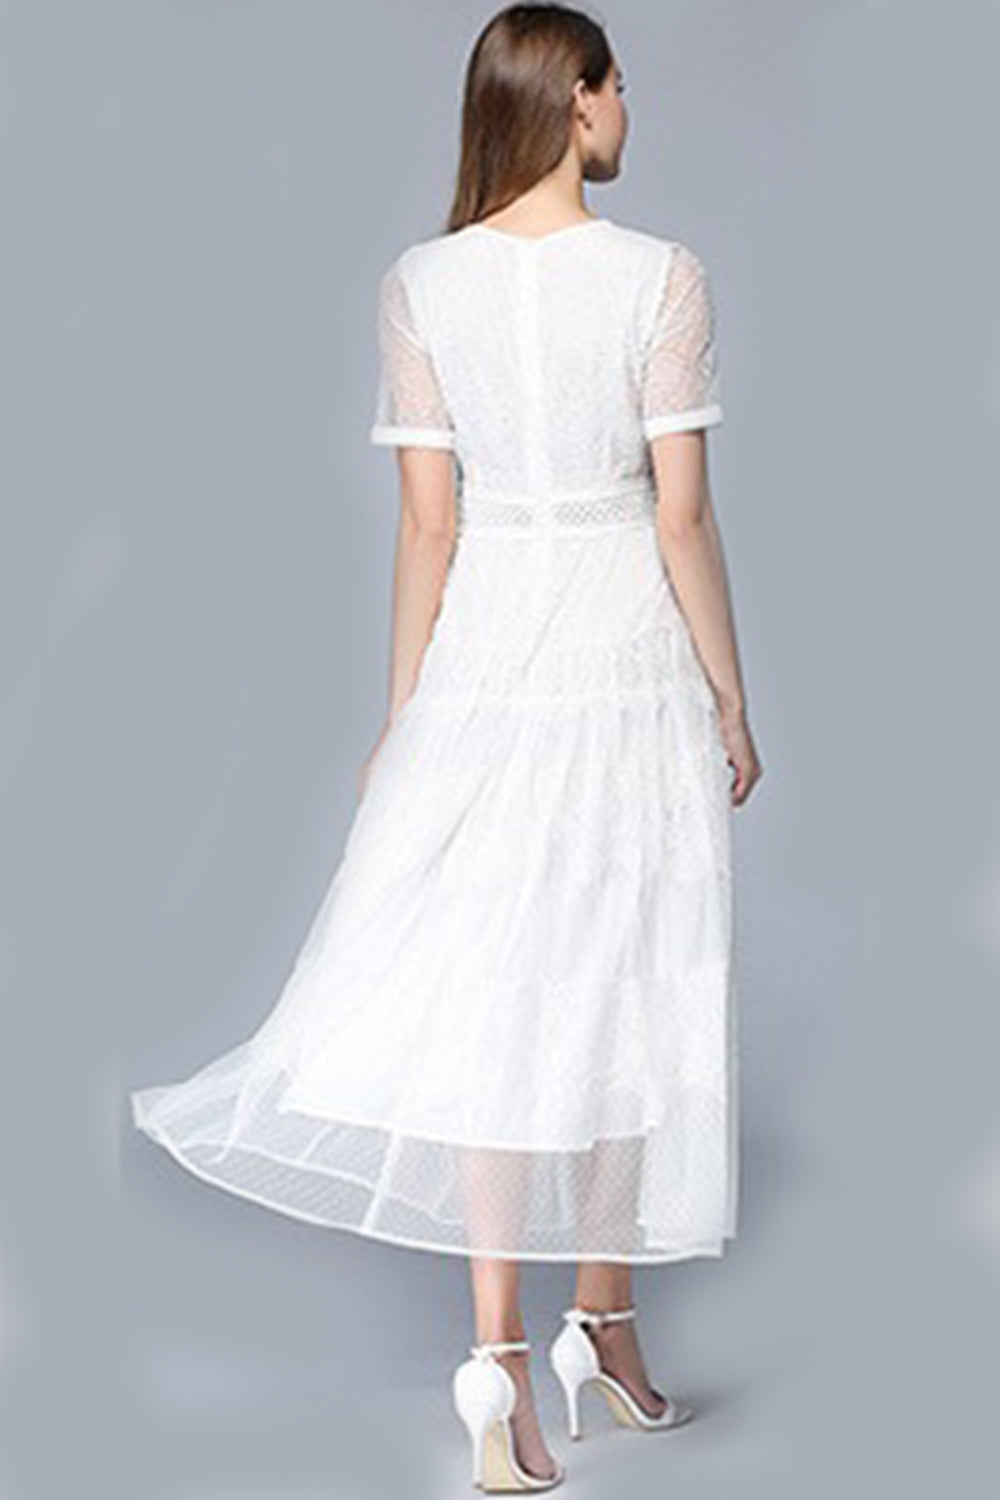 Ketty More Women Elegant High Quality Half Sleeve Fashion Dress-KMWD043